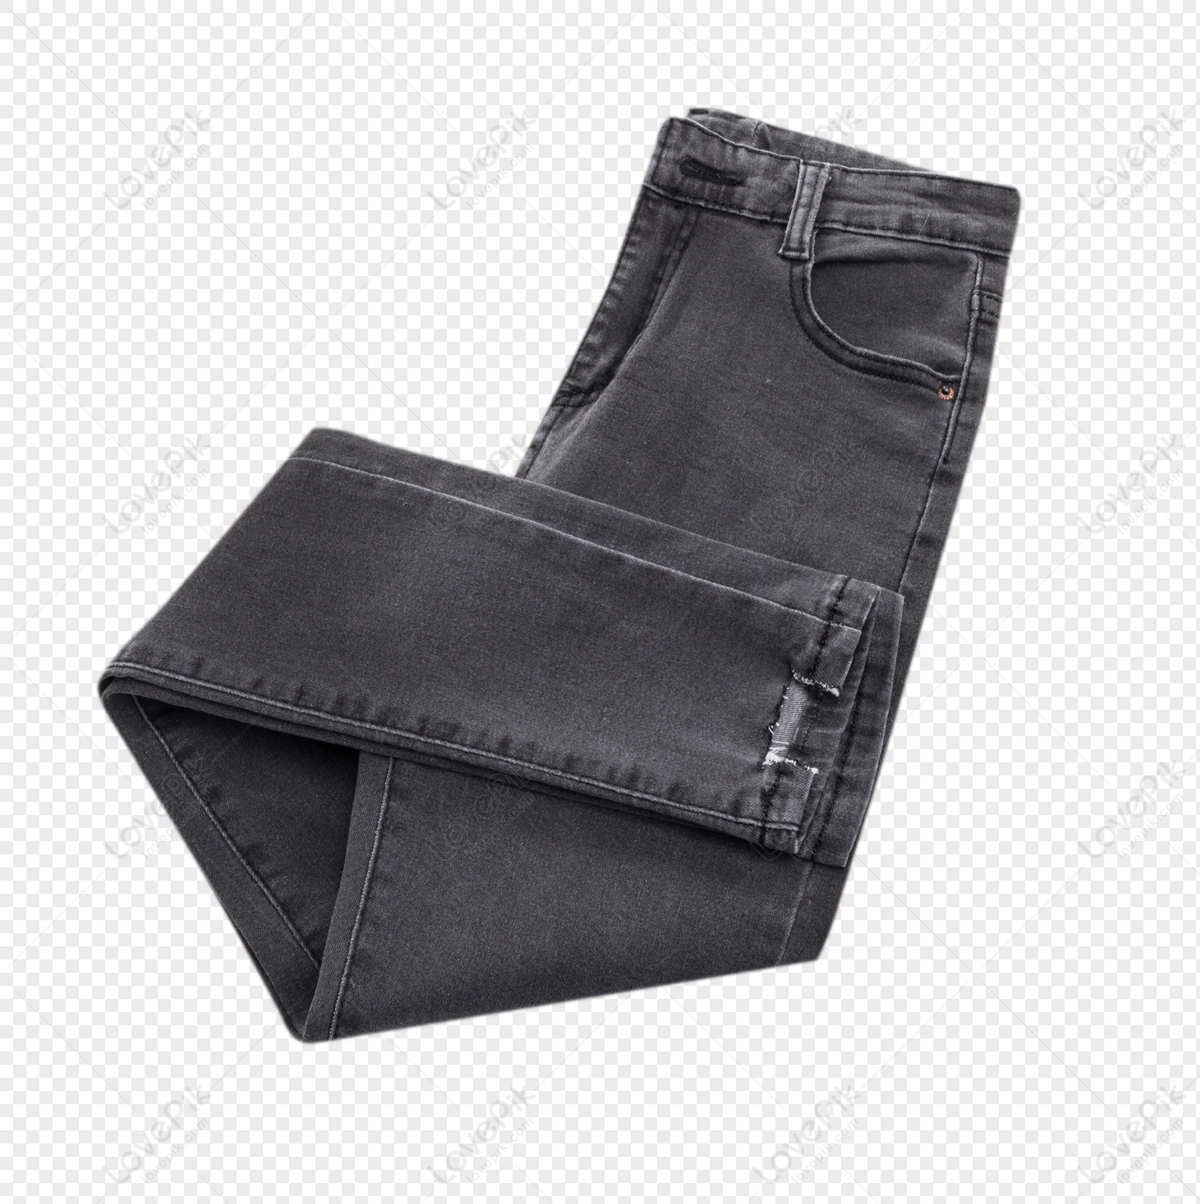 Jeans Pocket PNG Transparent Images Free Download | Vector Files | Pngtree